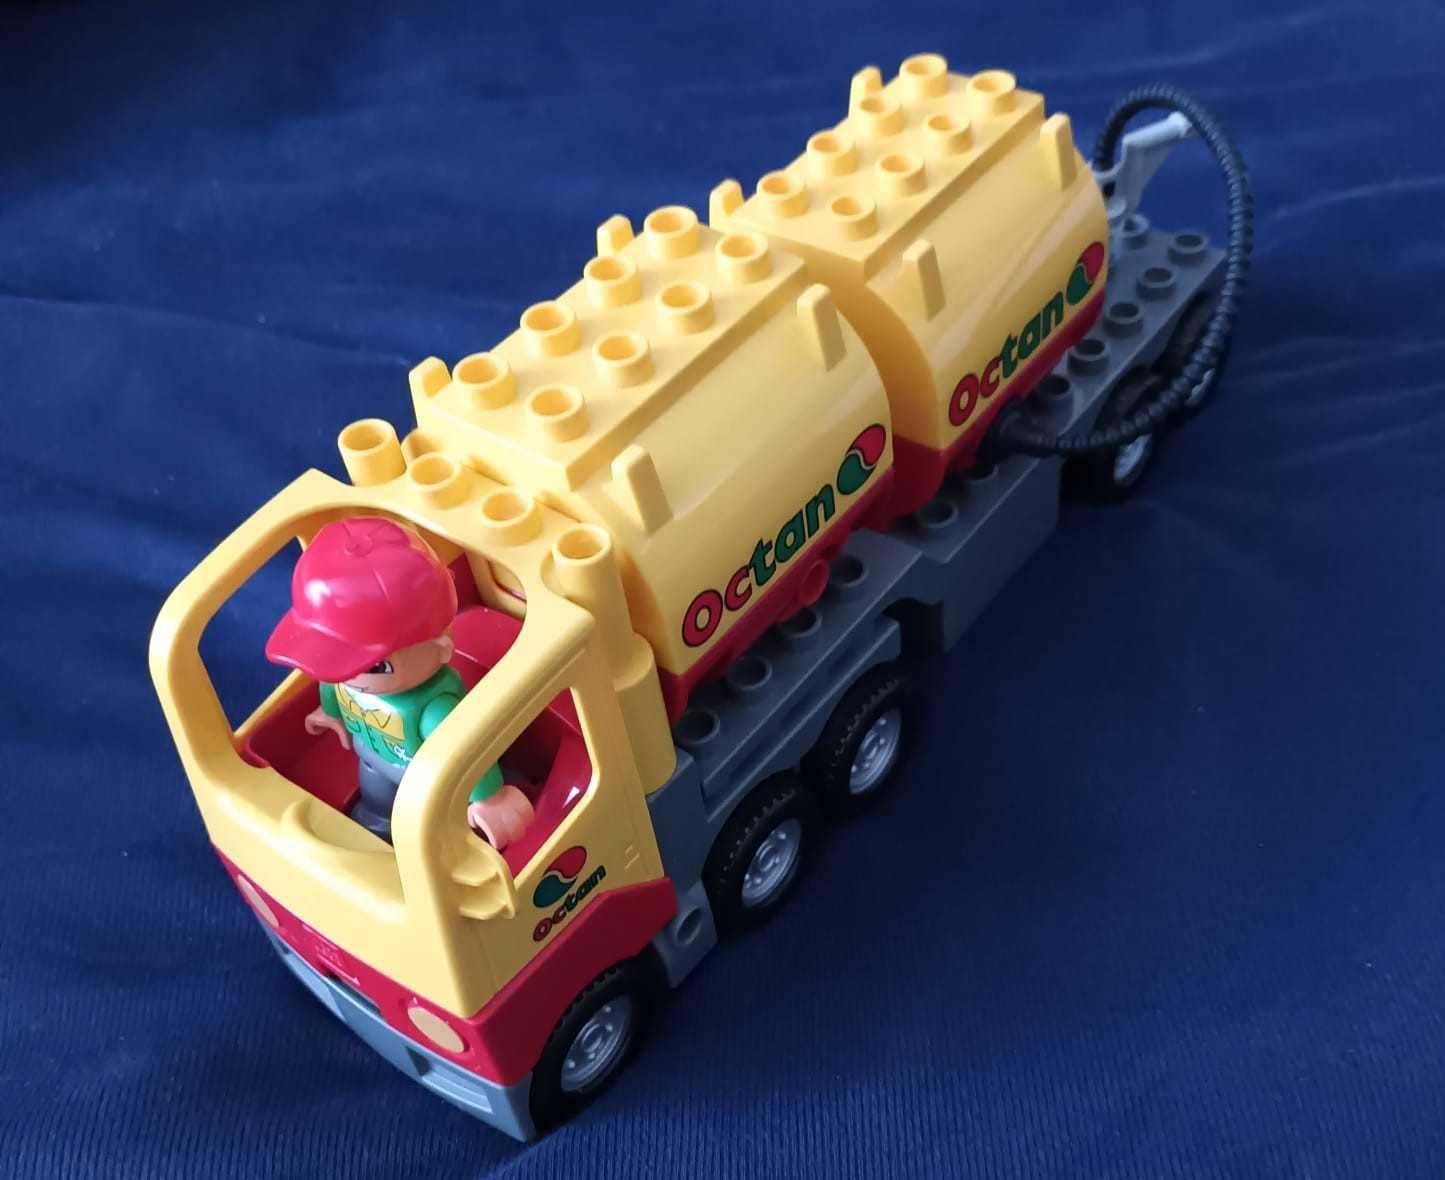 Sprzedam Lego Duplo 5605 - cysterna z dźwiękiem nalewania paliwa